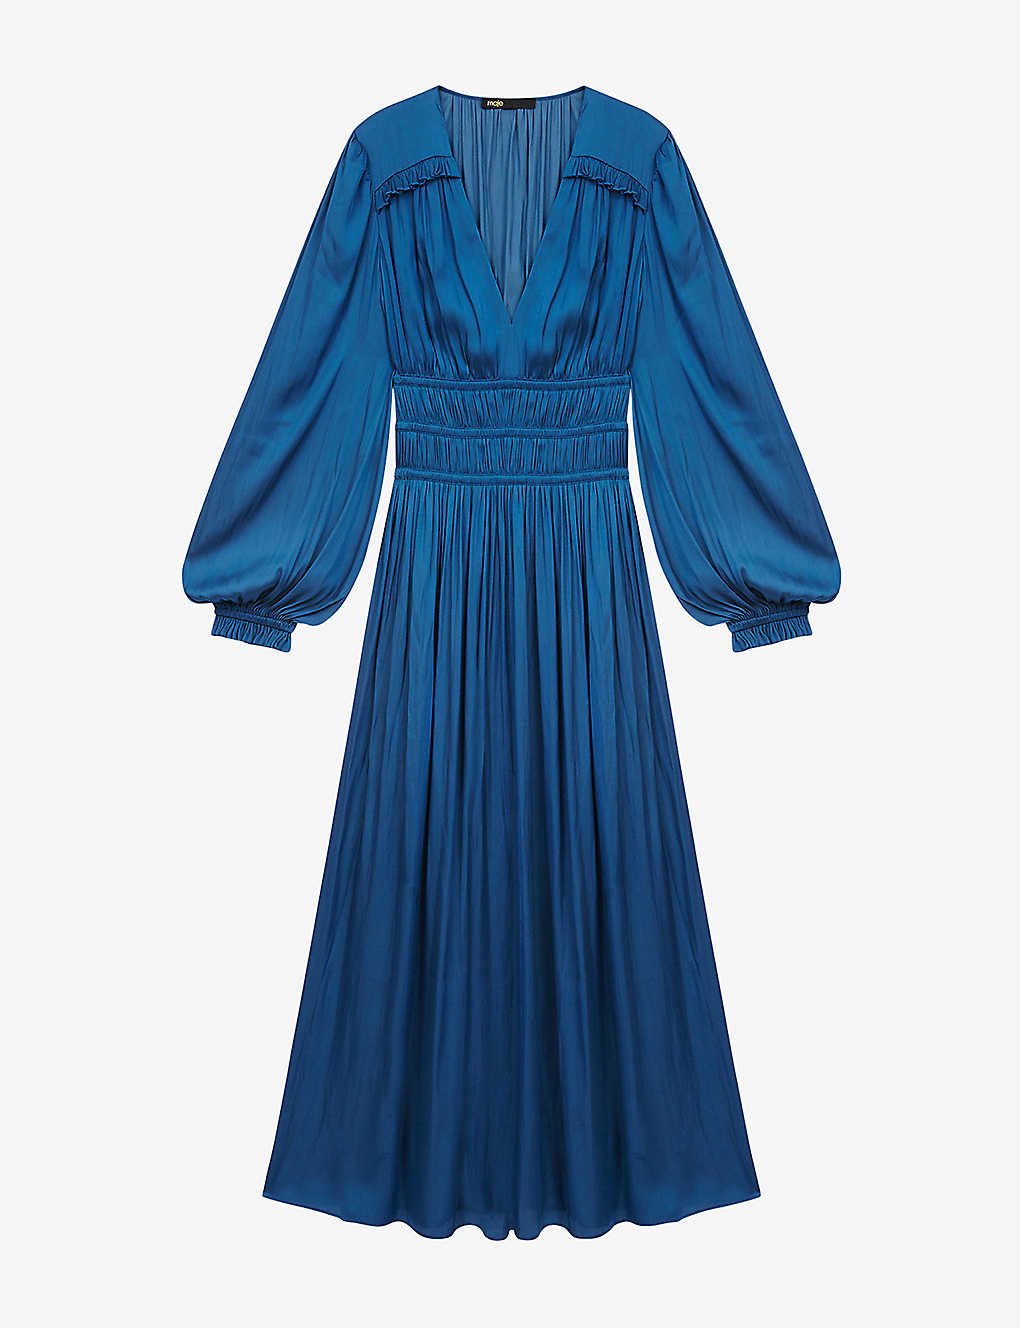 Maje Riannette Dress in Blue.jpg